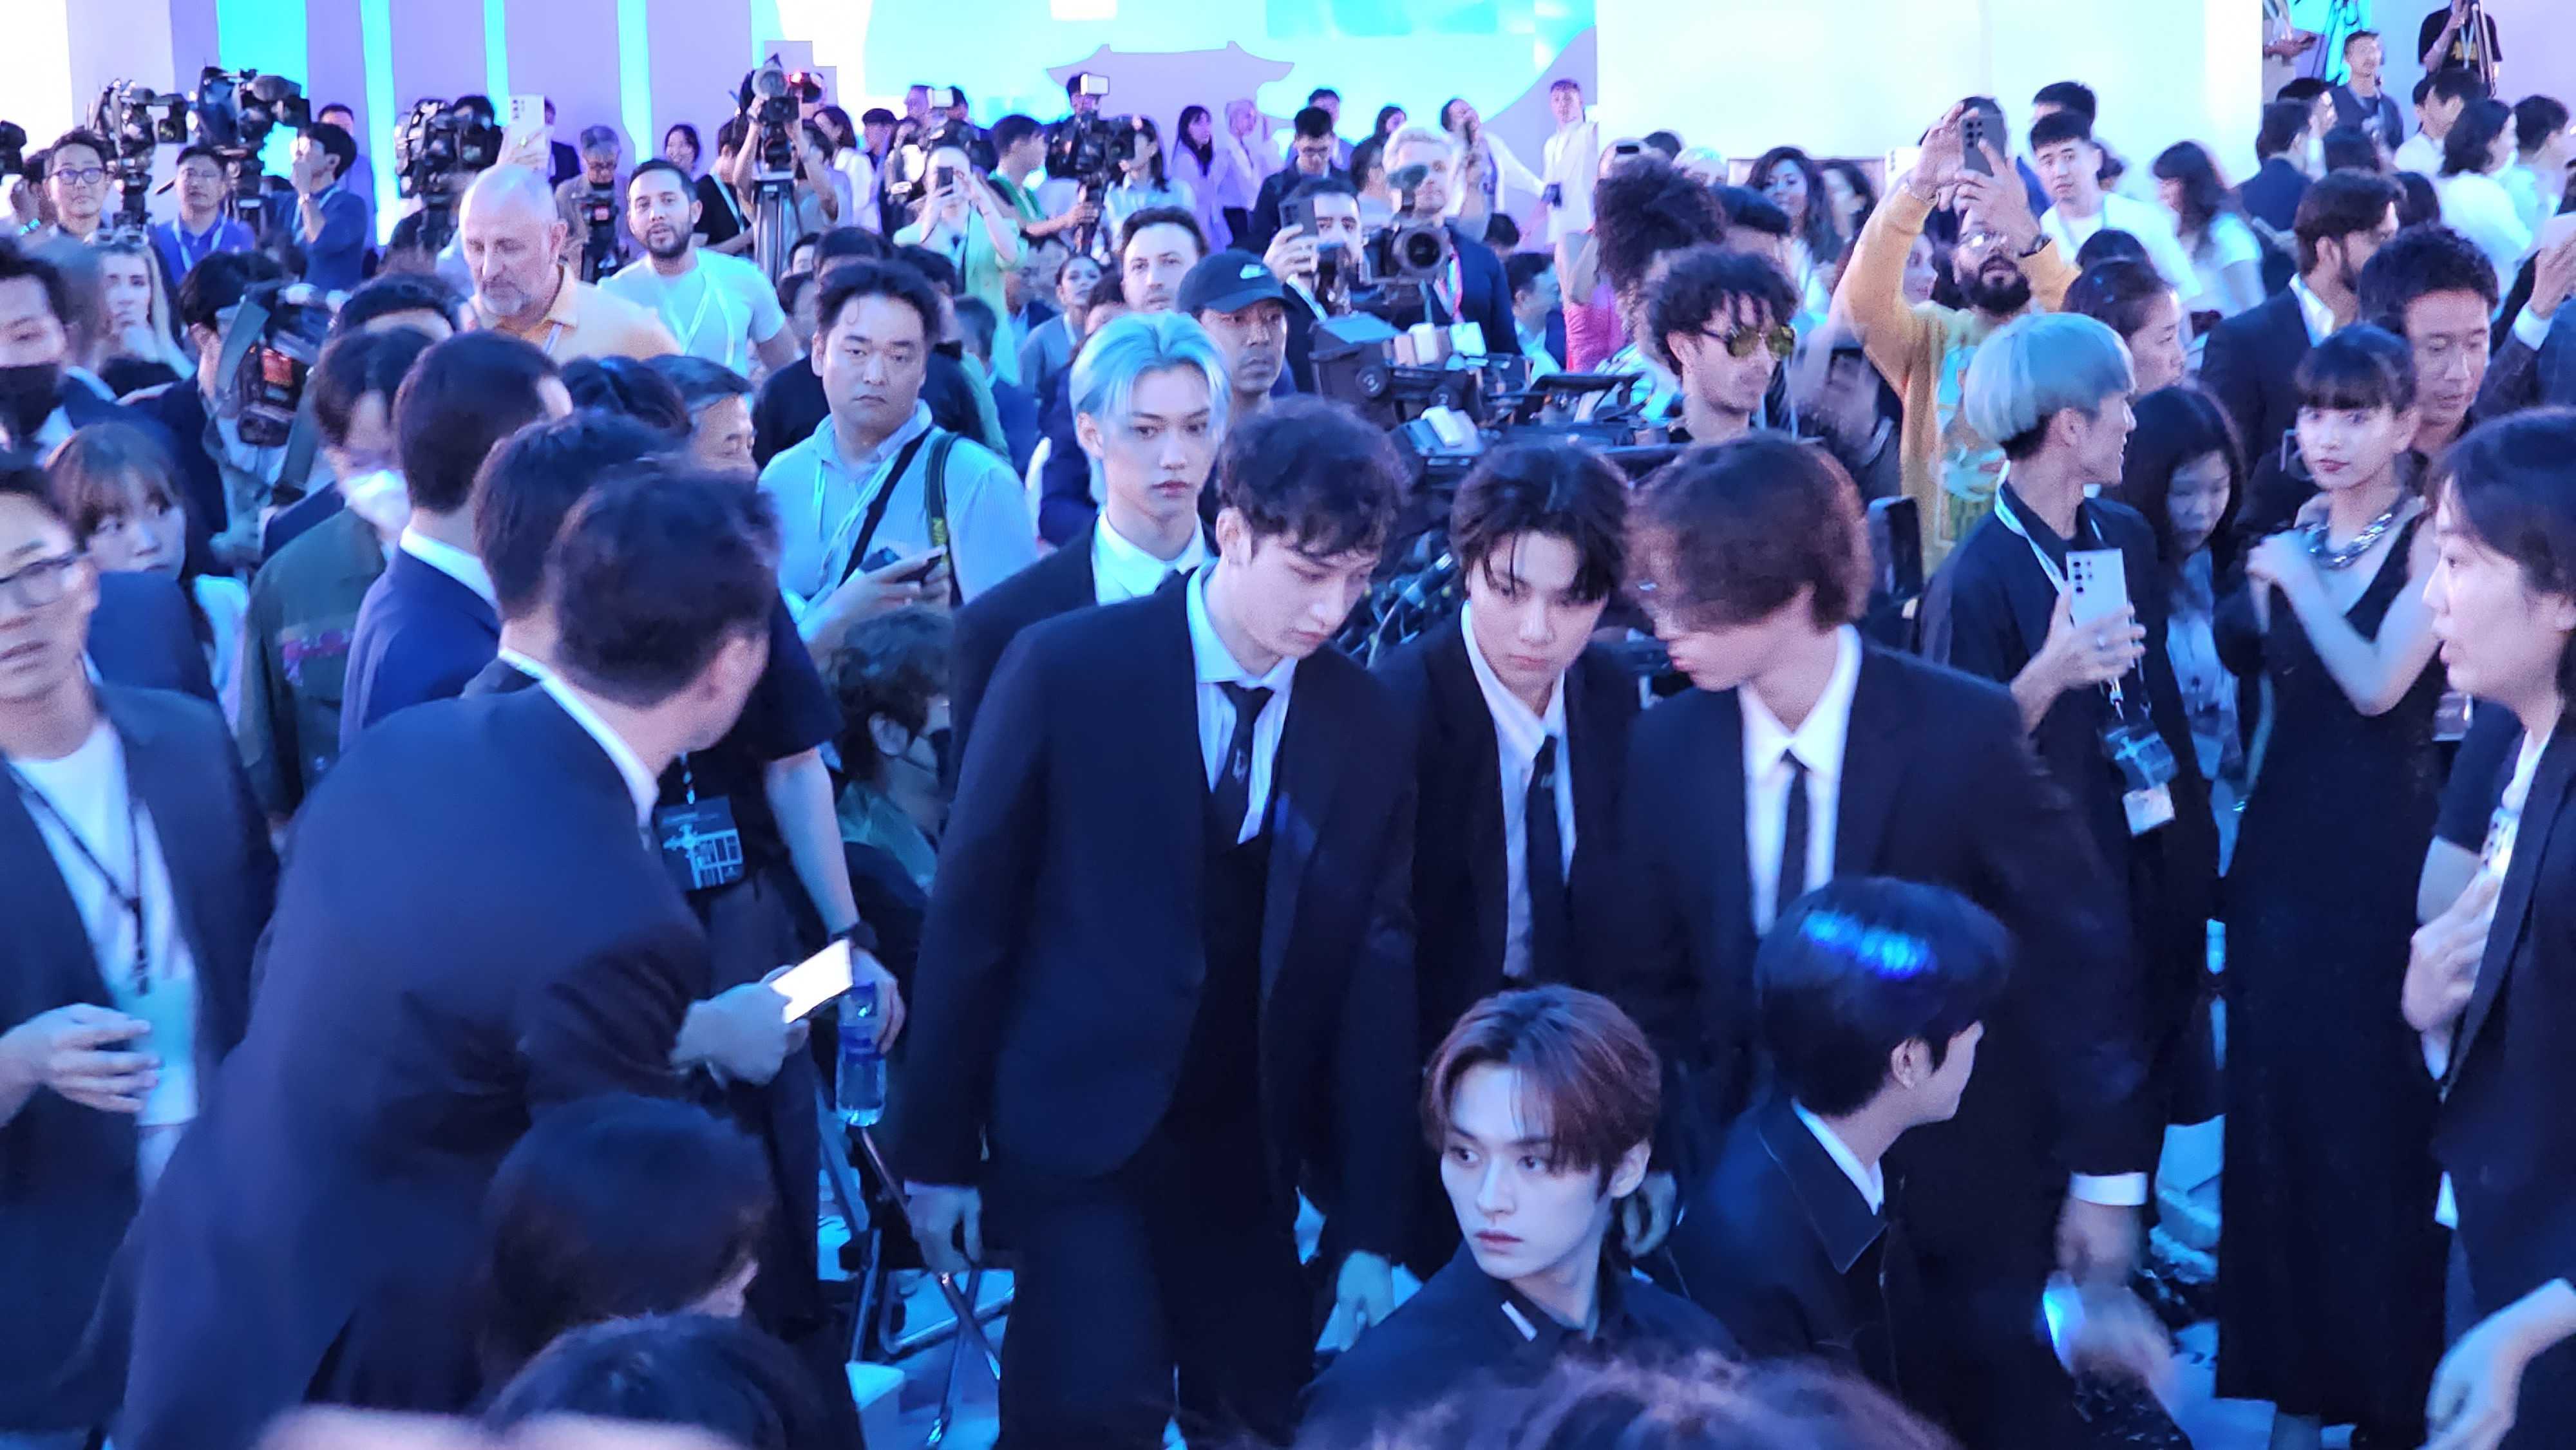 BTS in crowd at Samsung Unpacked